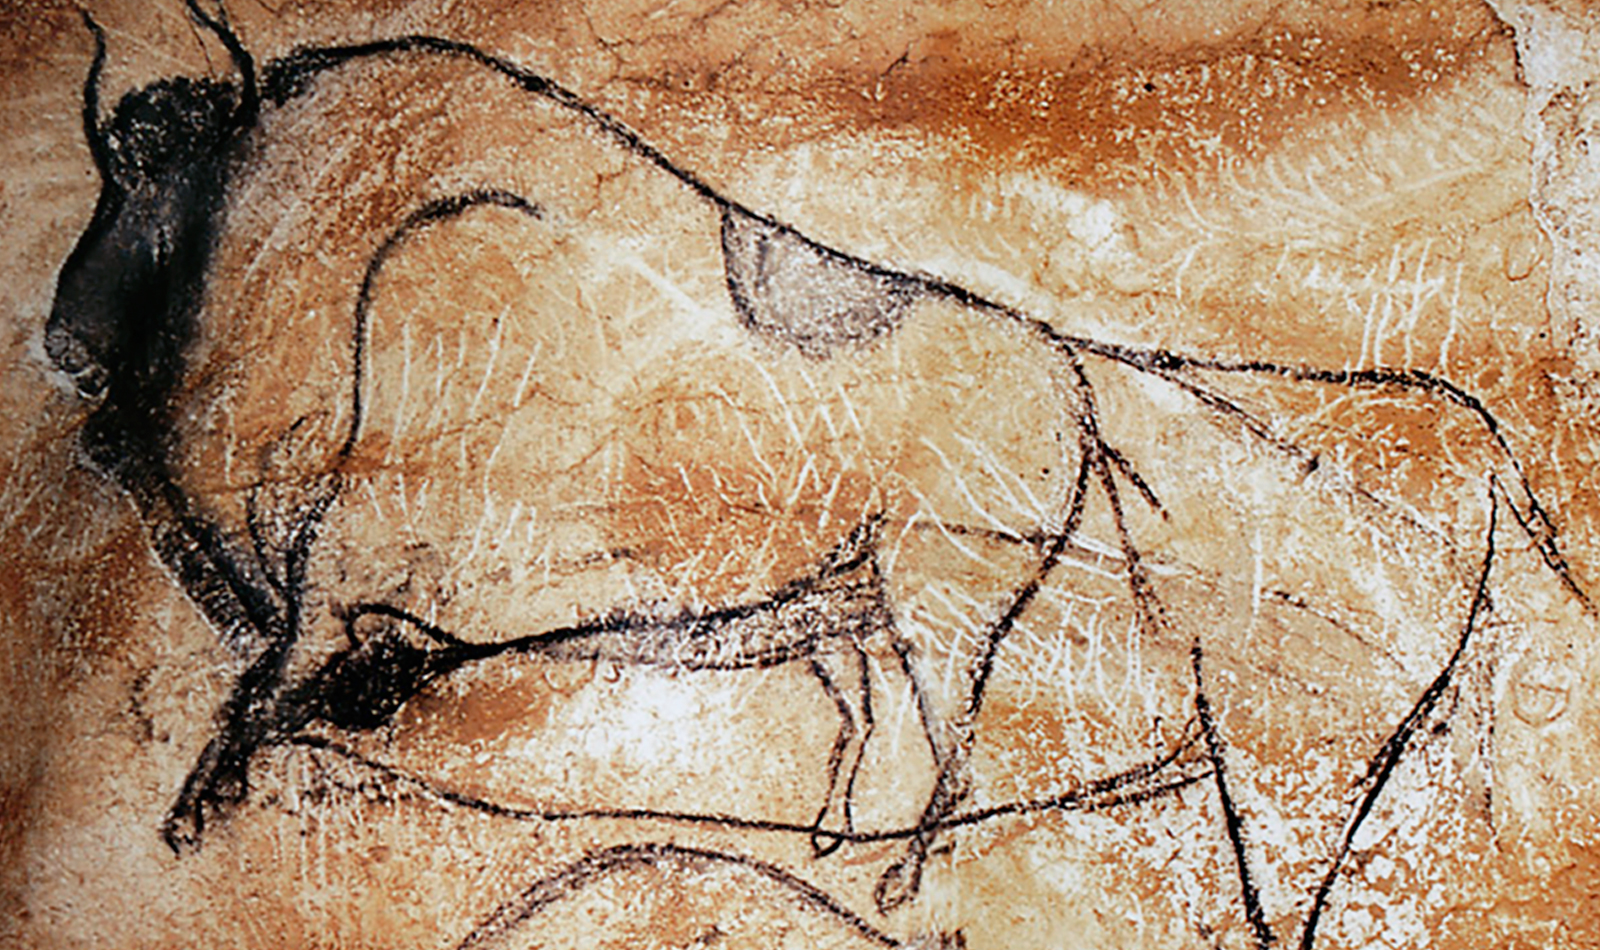 Bison Chauvet Cave Paintings Rock Art France Bradshaw Foundation